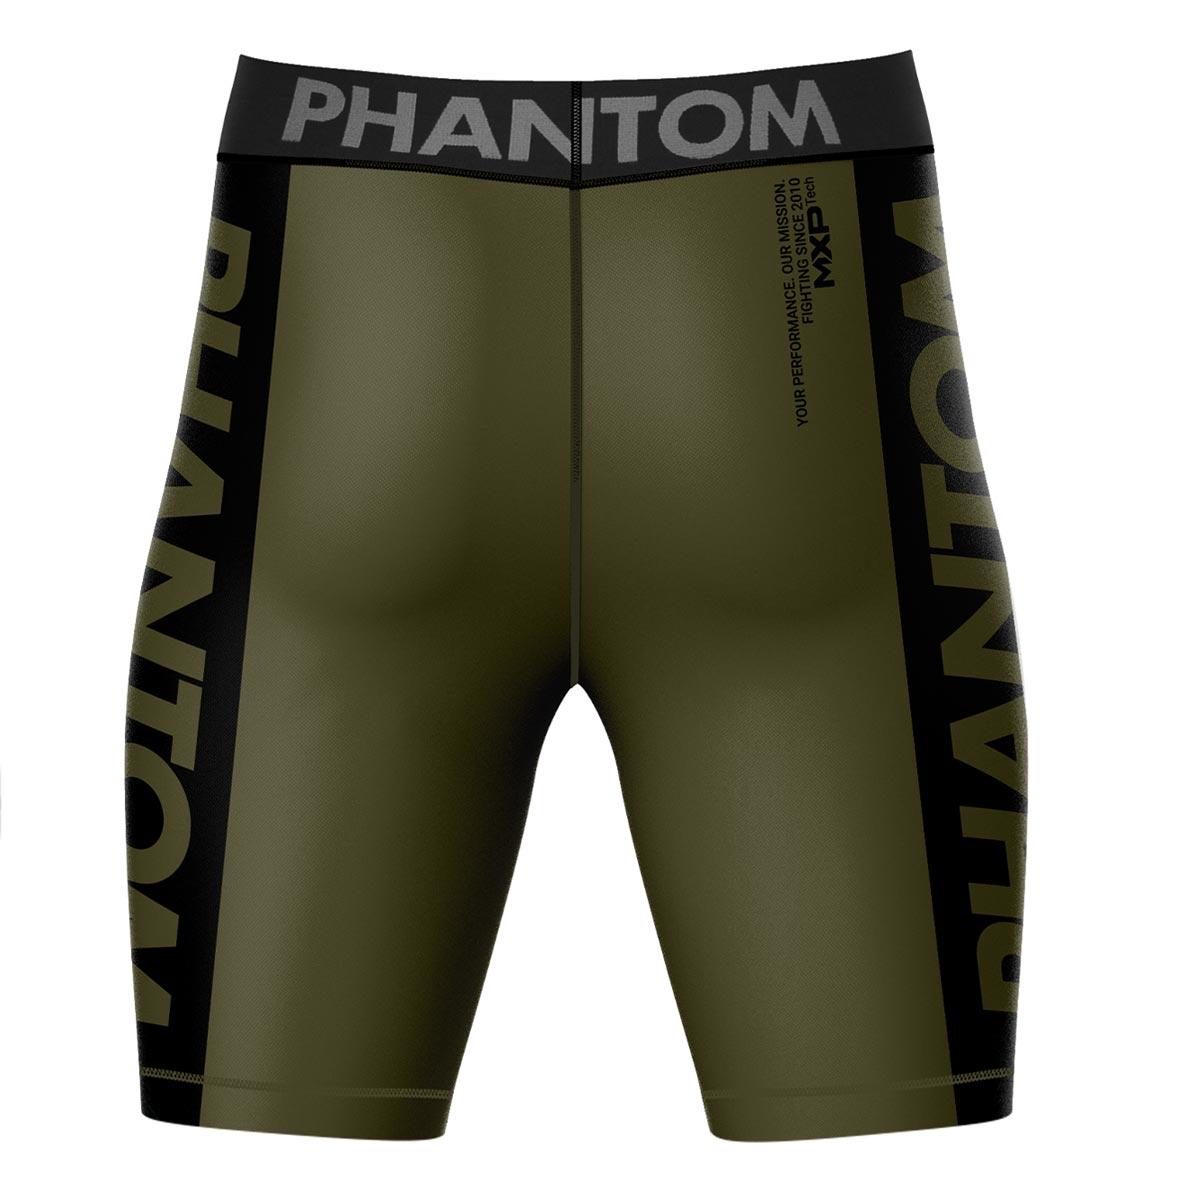 Phantom Compression Fightshorts in Army/Grün. Ultimativer Komfort und Bewegungsfreiheit. Ideal für deinen Kampfsport. 